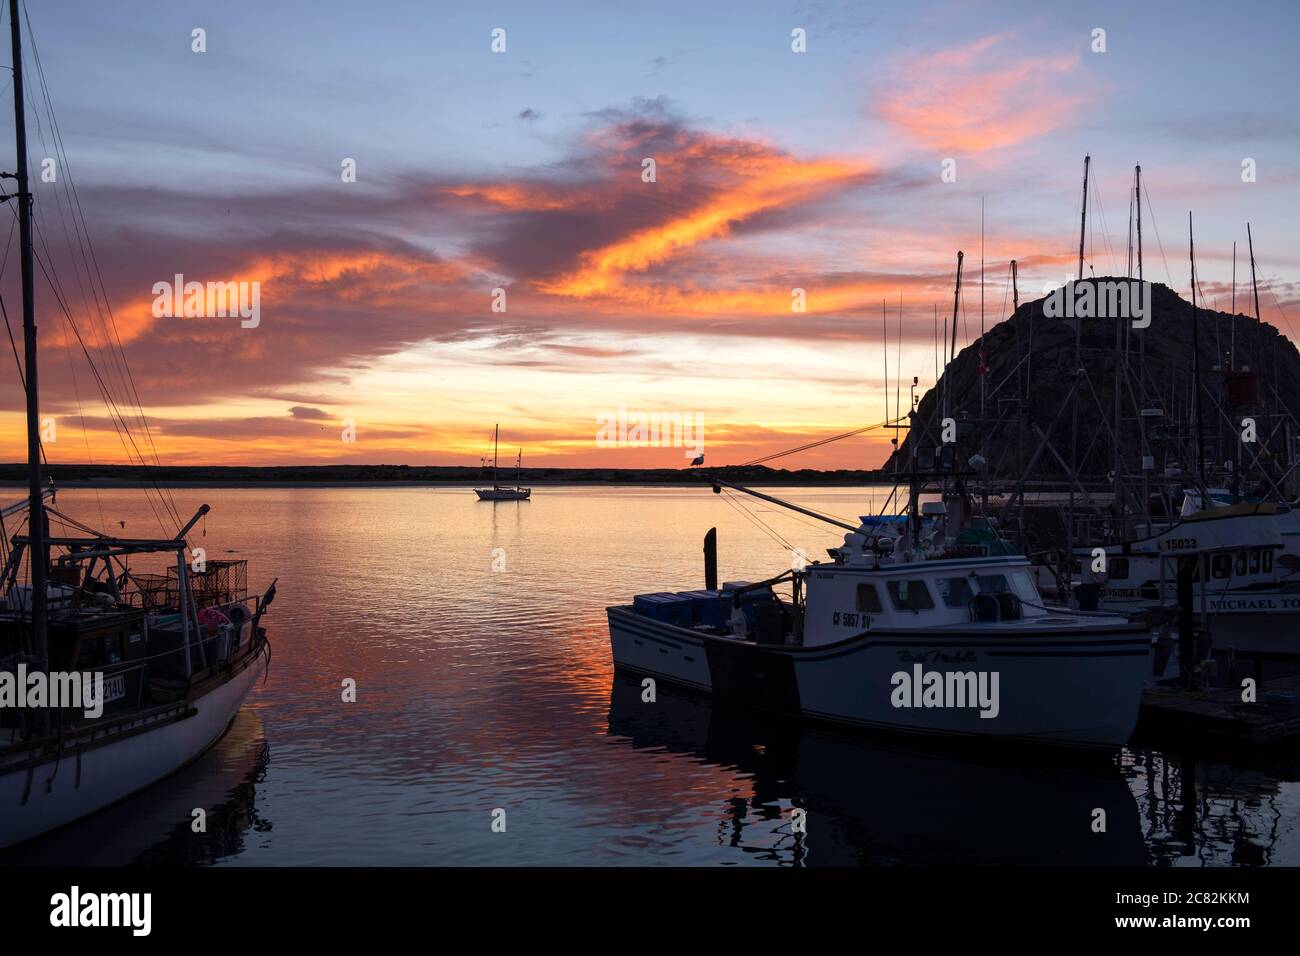 Coucher de soleil enflammé dans la baie de Morro, parmi les bateaux de pêche, lors d'une soirée calme Banque D'Images